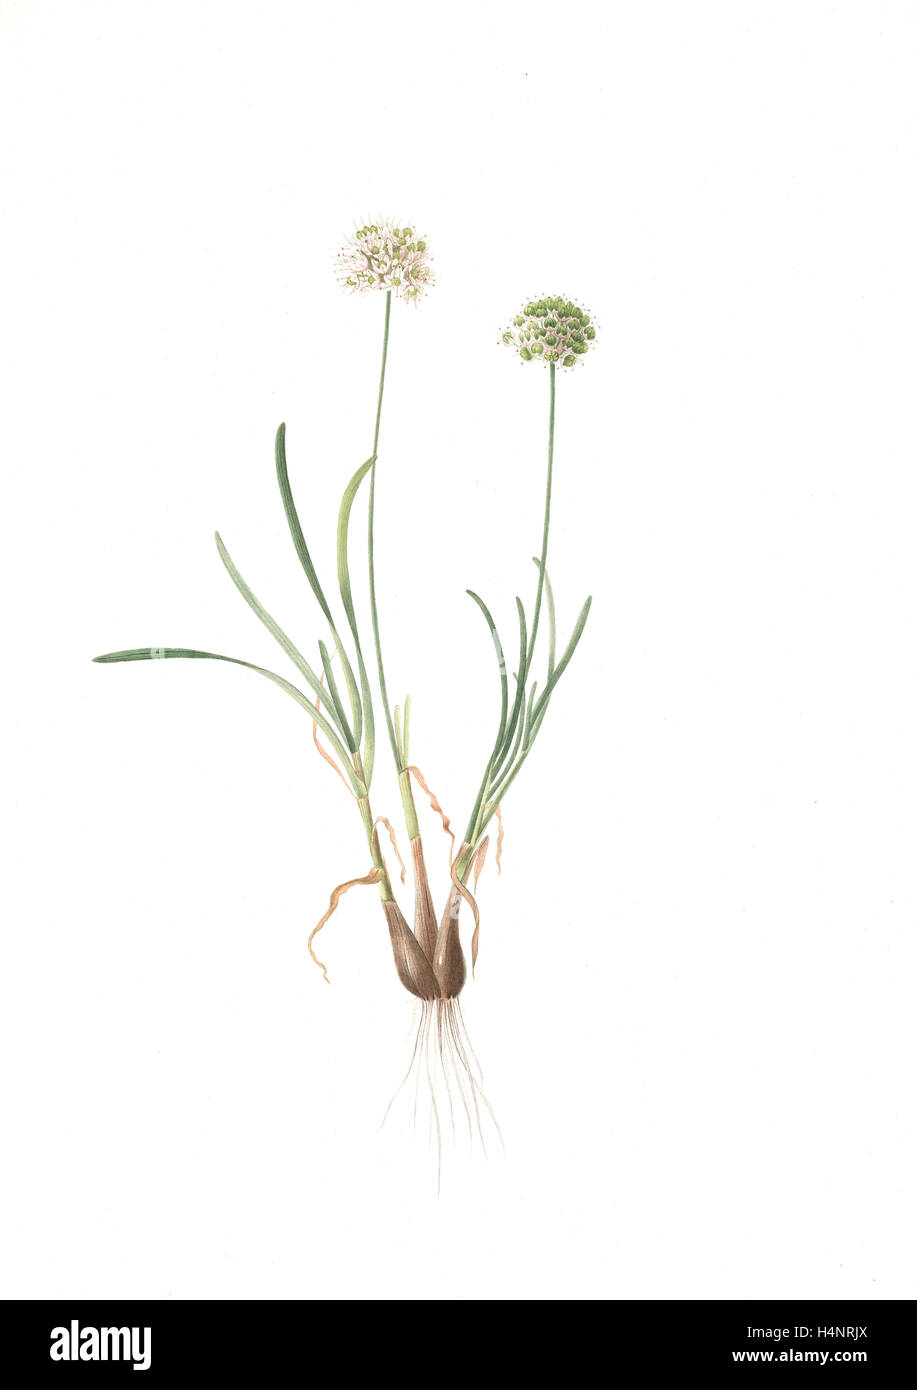 Allium carolinianum, Ail de Caroline, Redouté, Pierre Joseph, 1759-1840, les liliacees, 1802 - 1816 Stock Photo